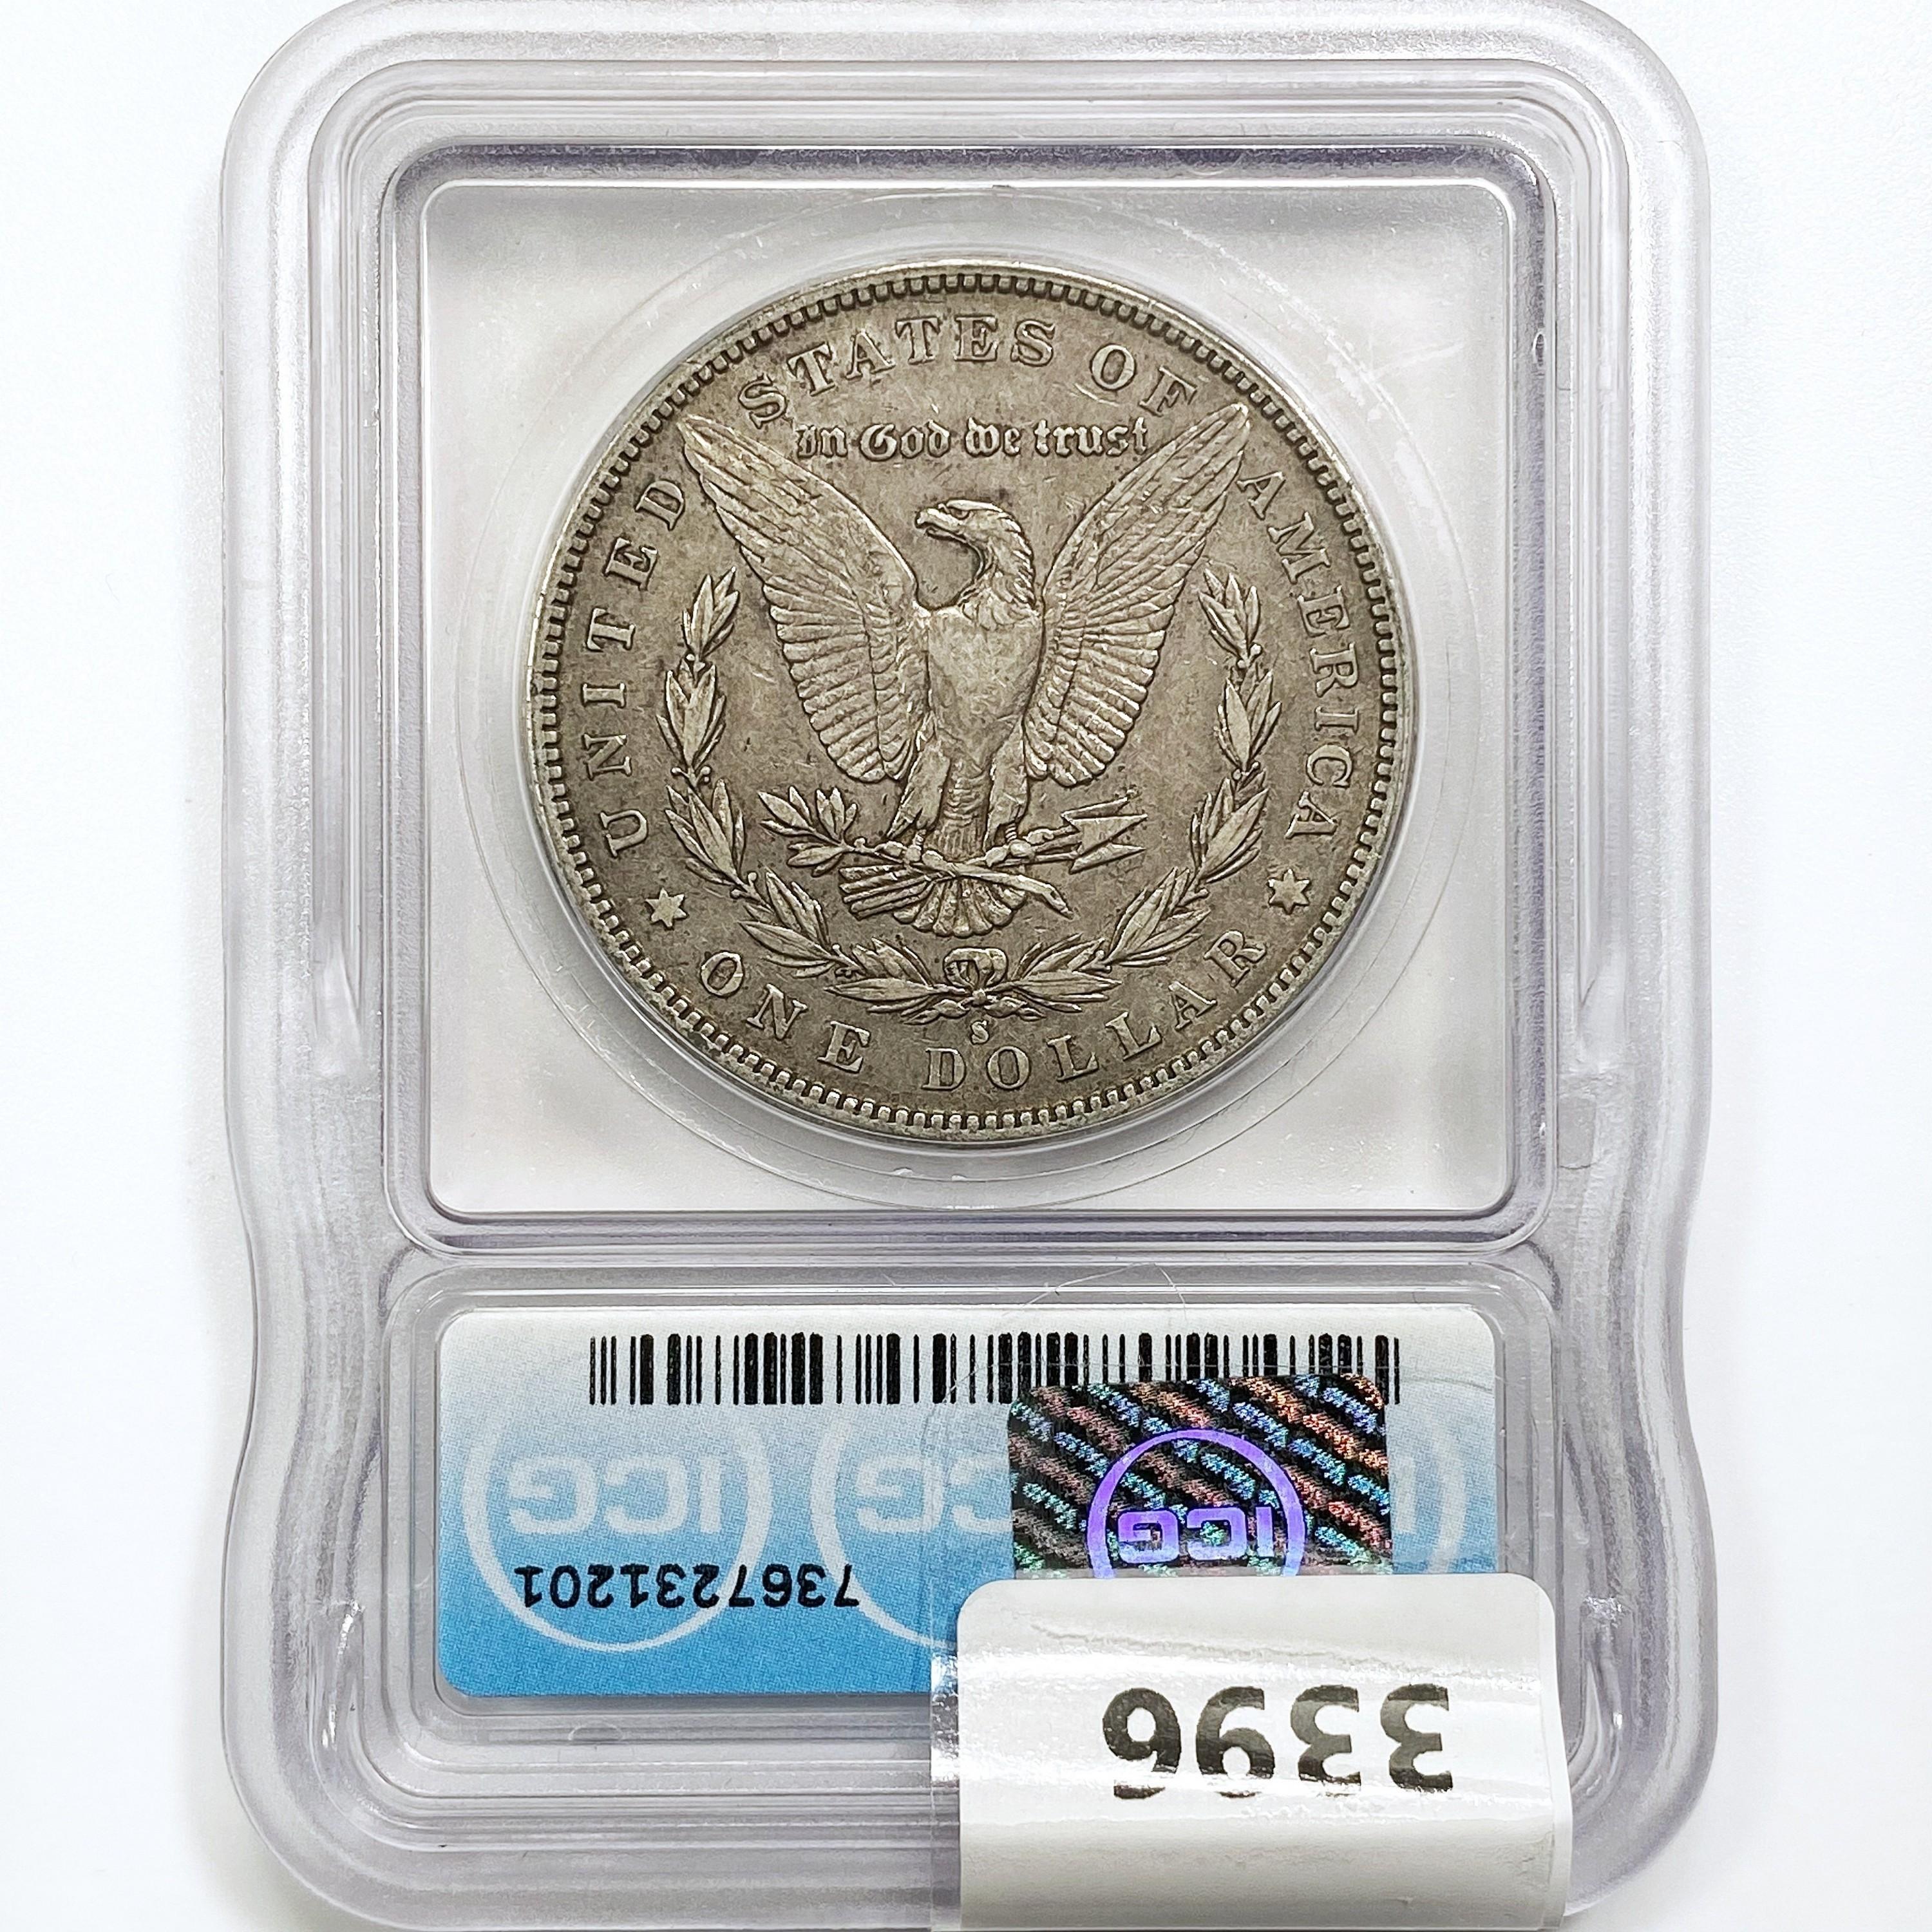 1883-S Morgan Silver Dollar ICG EF40